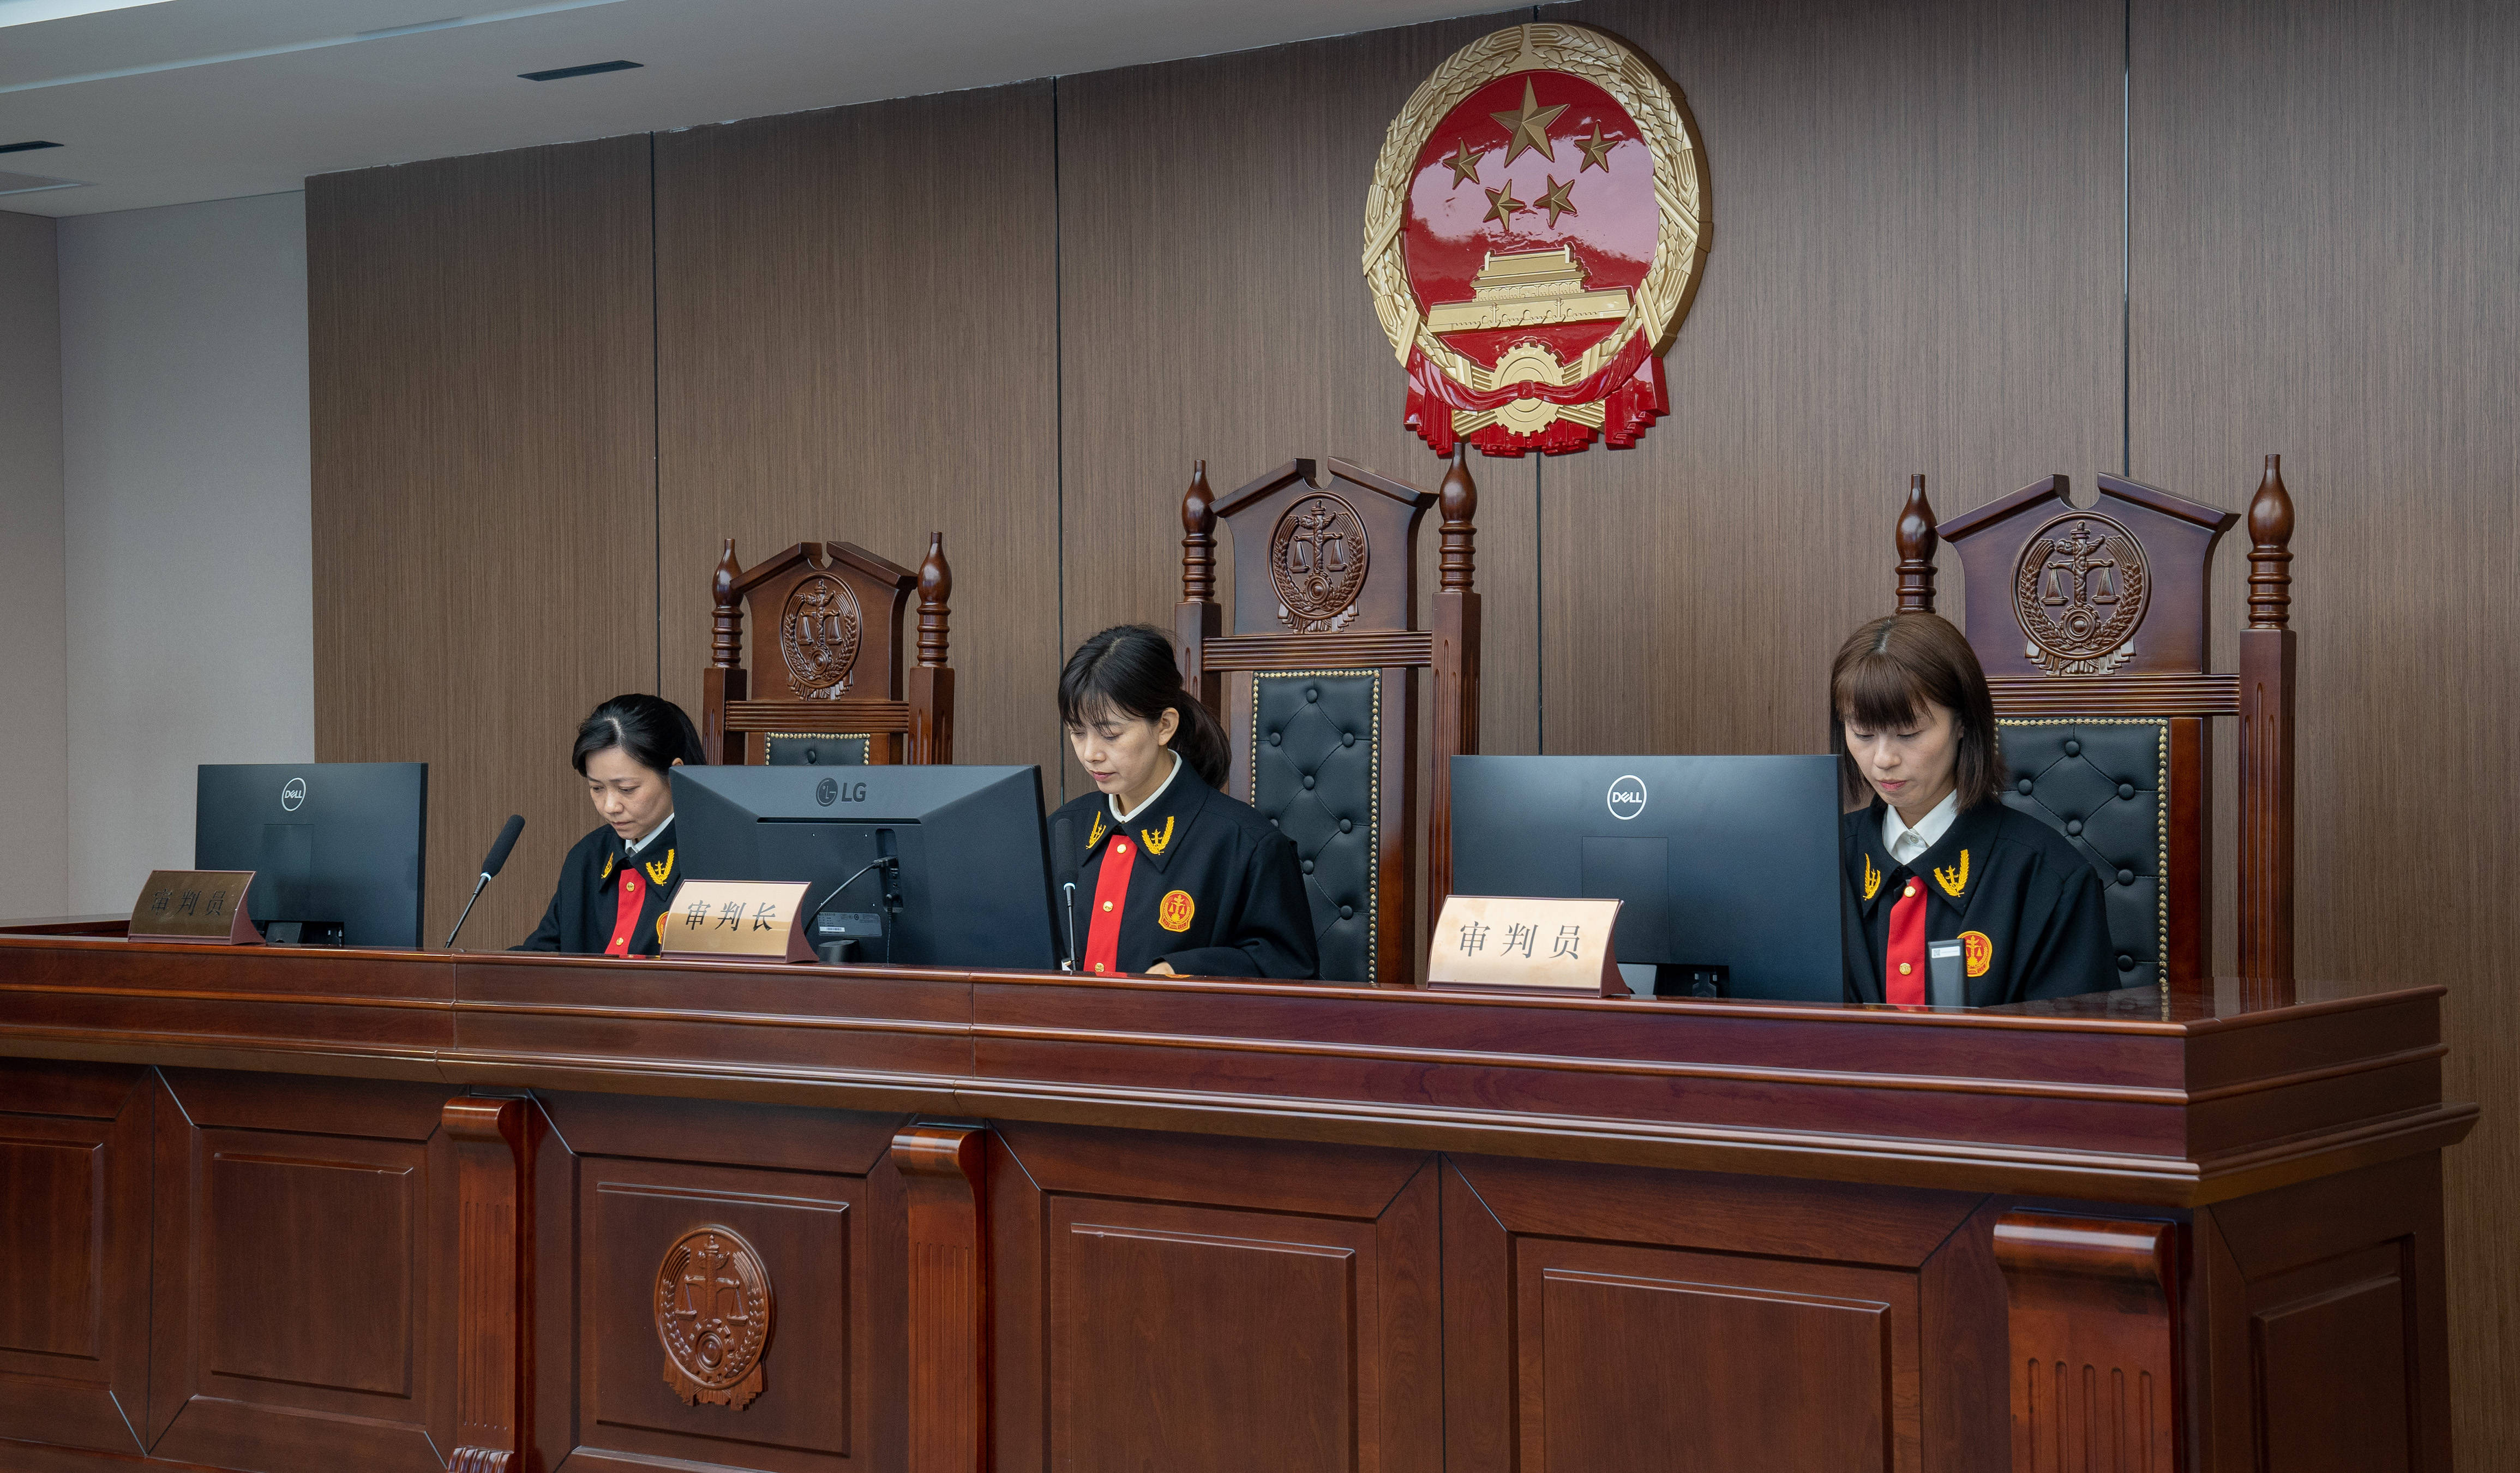 新华社照片,成都,2021年5月25日我国中西部首个互联网法庭开审首案这